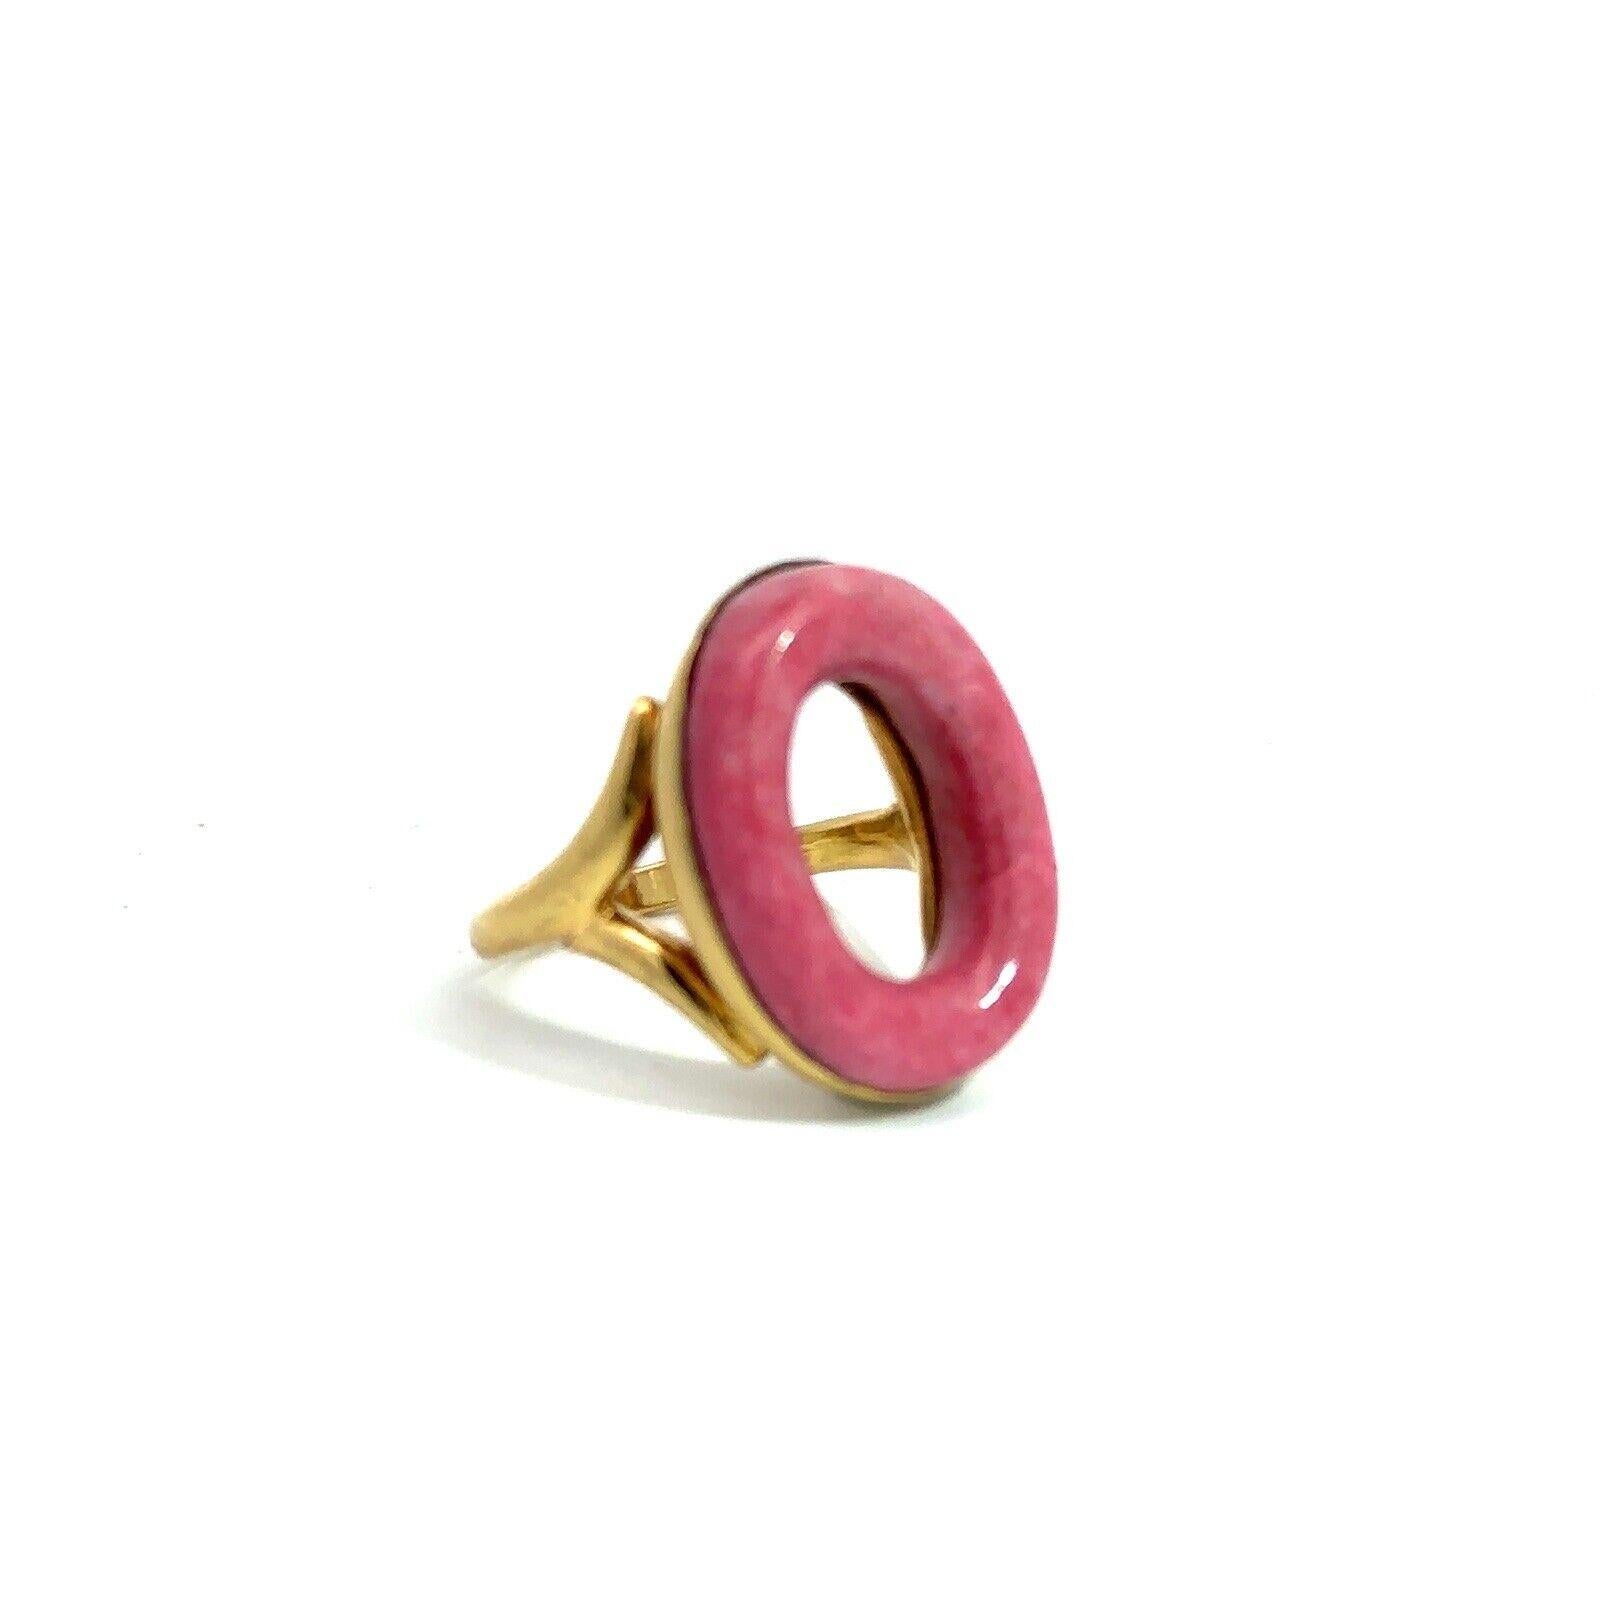 Bvlgari Italien 18k Gelbgold & Rhodochrosit Kreis Ring CIRCA 1970s Vintage By


Hier haben Sie die Chance, einen wunderschönen Designer-Ring mit hohem Sammlerwert zu erwerben.  Wirklich ein tolles Stück zu einem tollen Preis! 

Einzelheiten:
Größe :